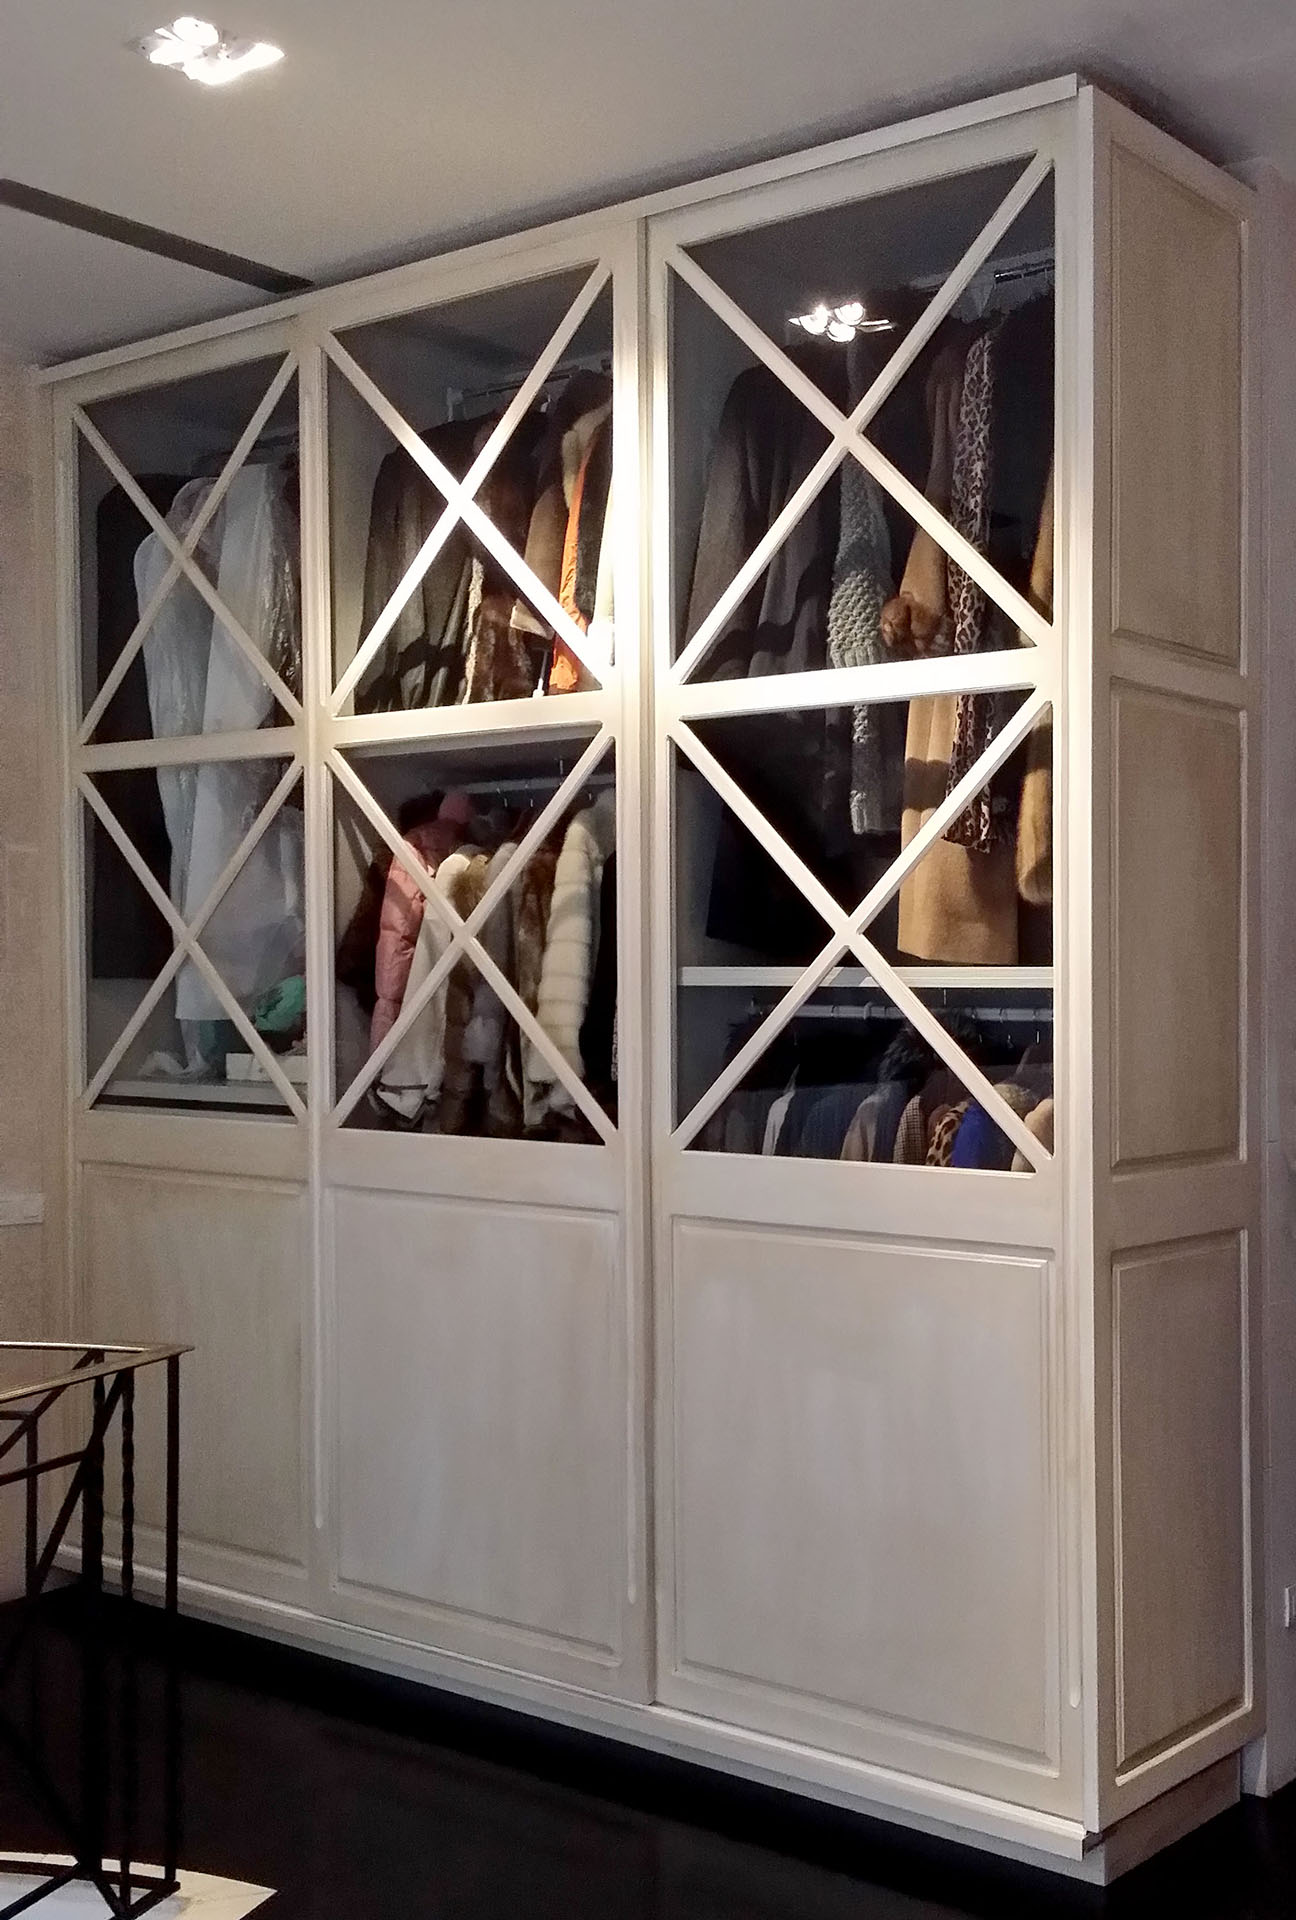 armario de madera en color blanco roto con frente de madera y cristal